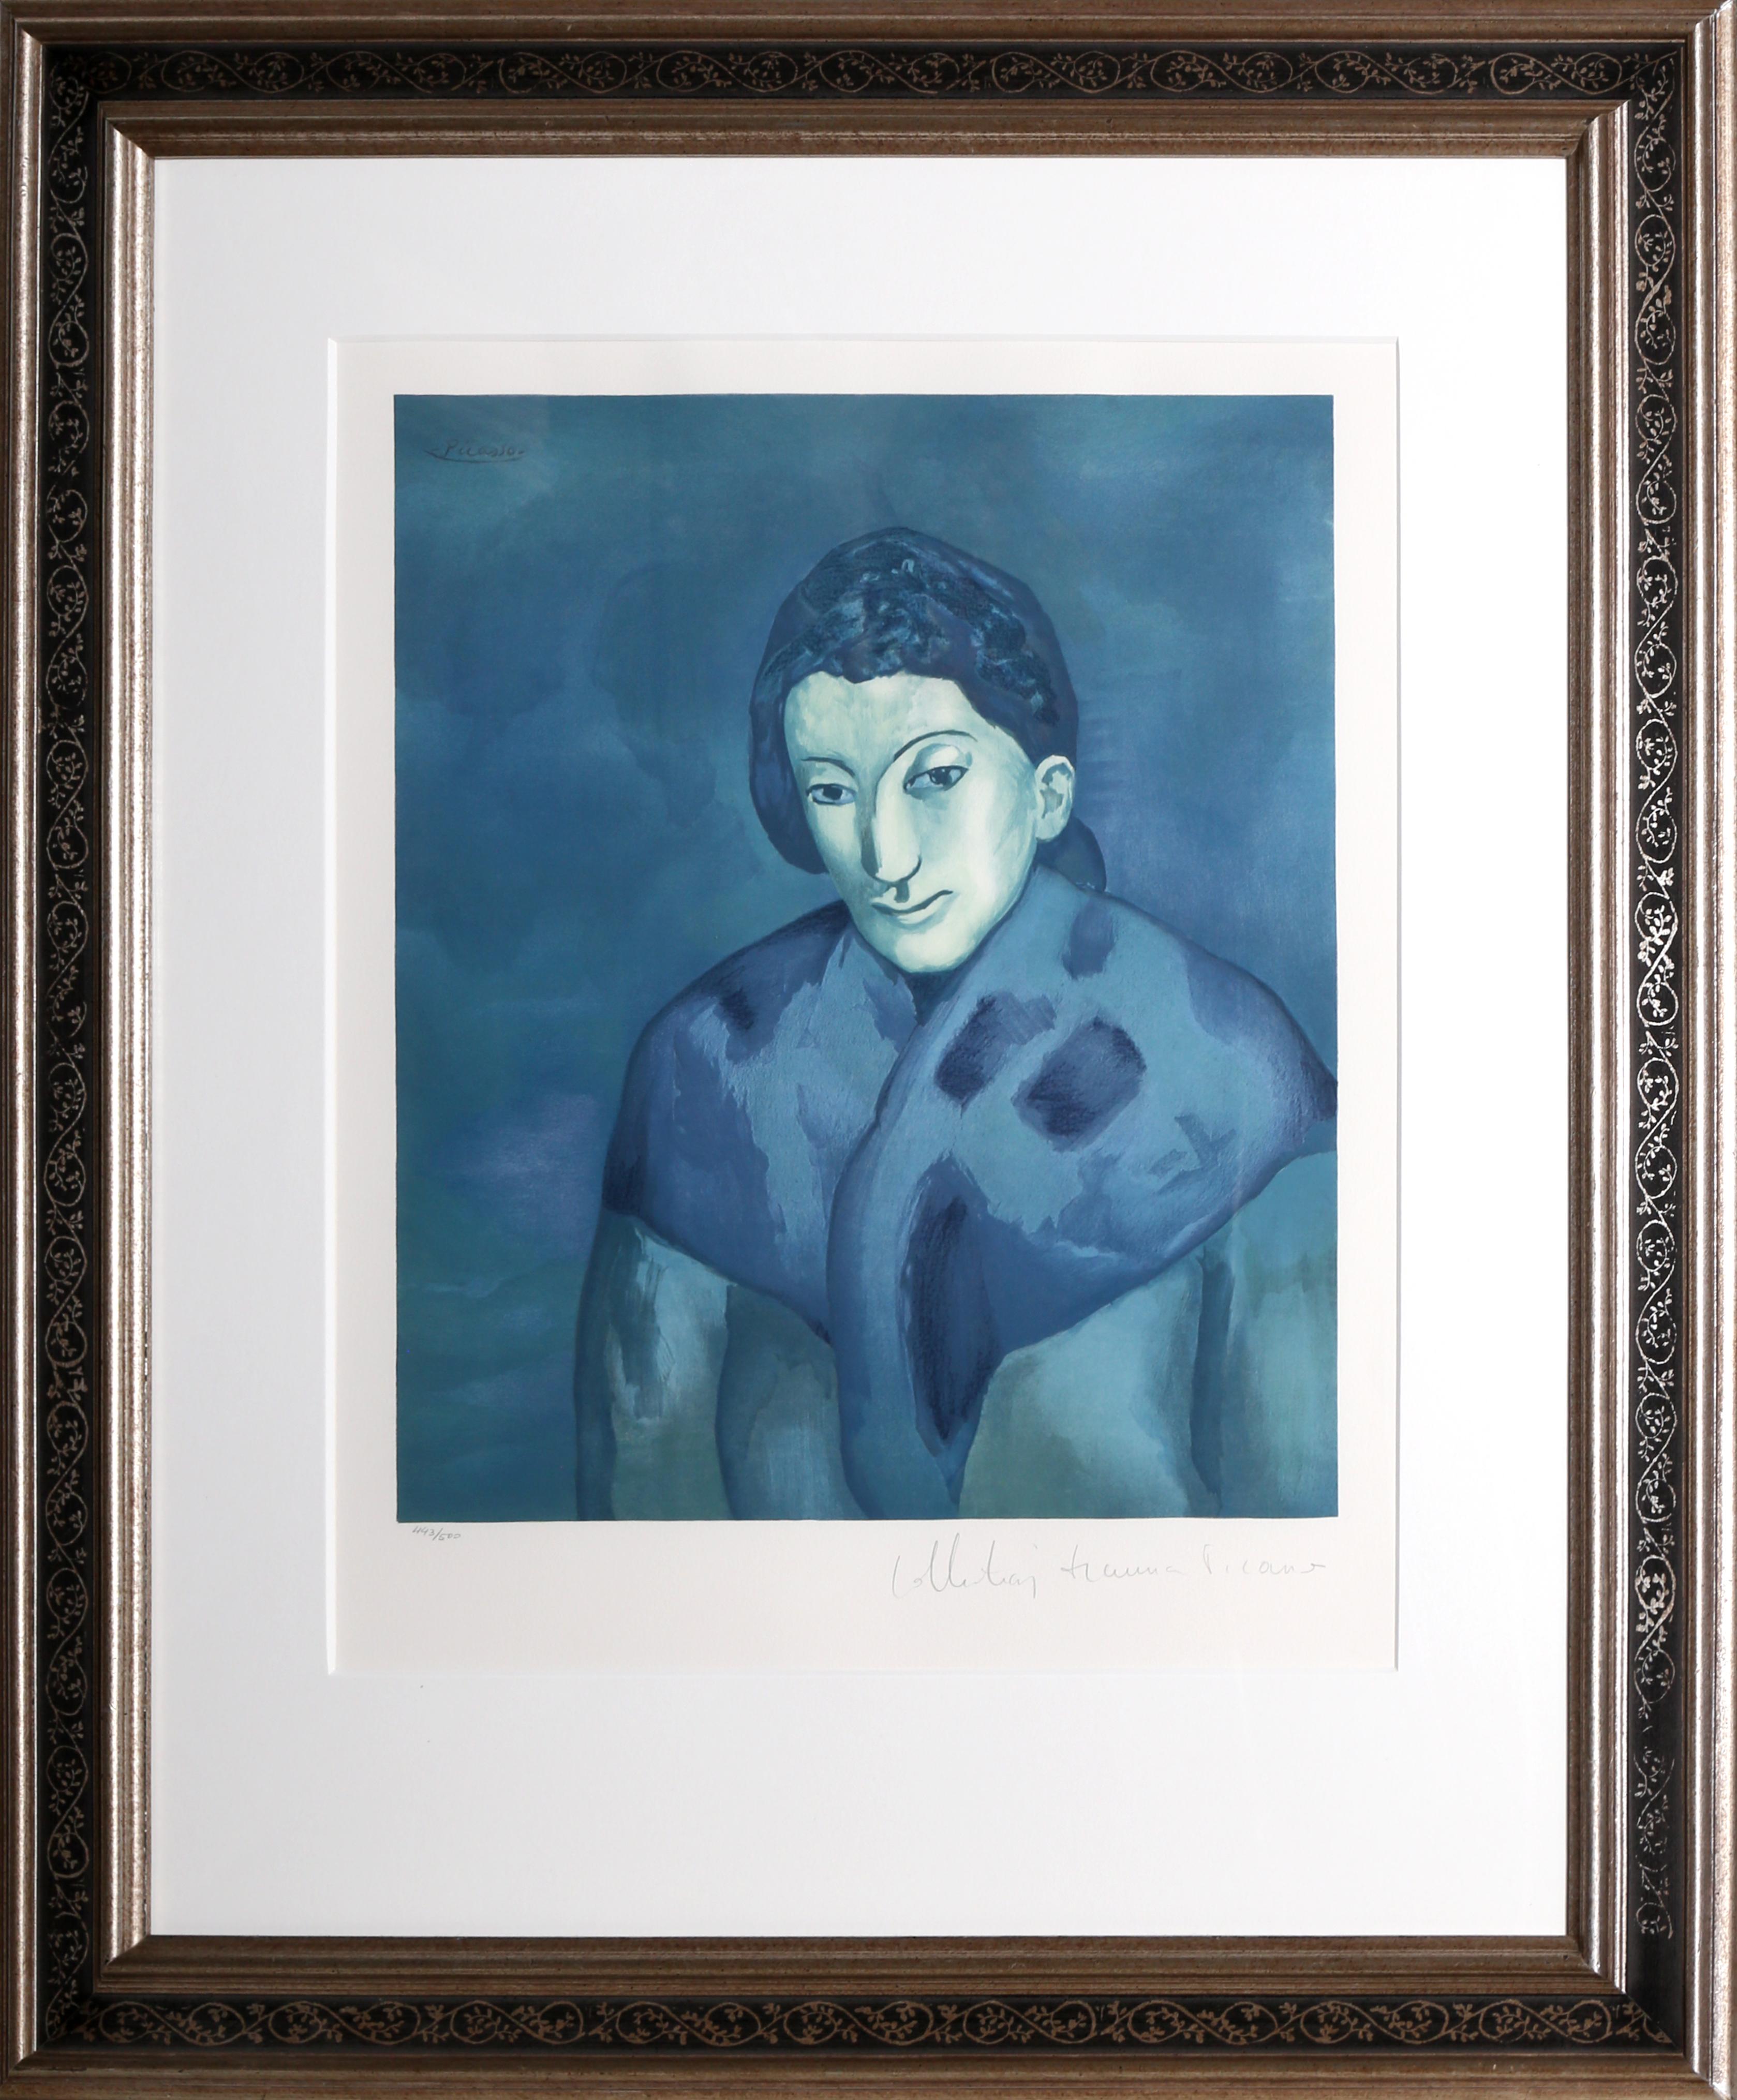 Eine Lithographie aus der Nachlasssammlung Marina Picasso nach dem Gemälde "Buste de Femme" von Pablo Picasso.  Das Originalgemälde wurde 1902 fertiggestellt. In den 1970er Jahren, nach Picassos Tod, autorisierte Marina Picasso, seine Enkelin, die